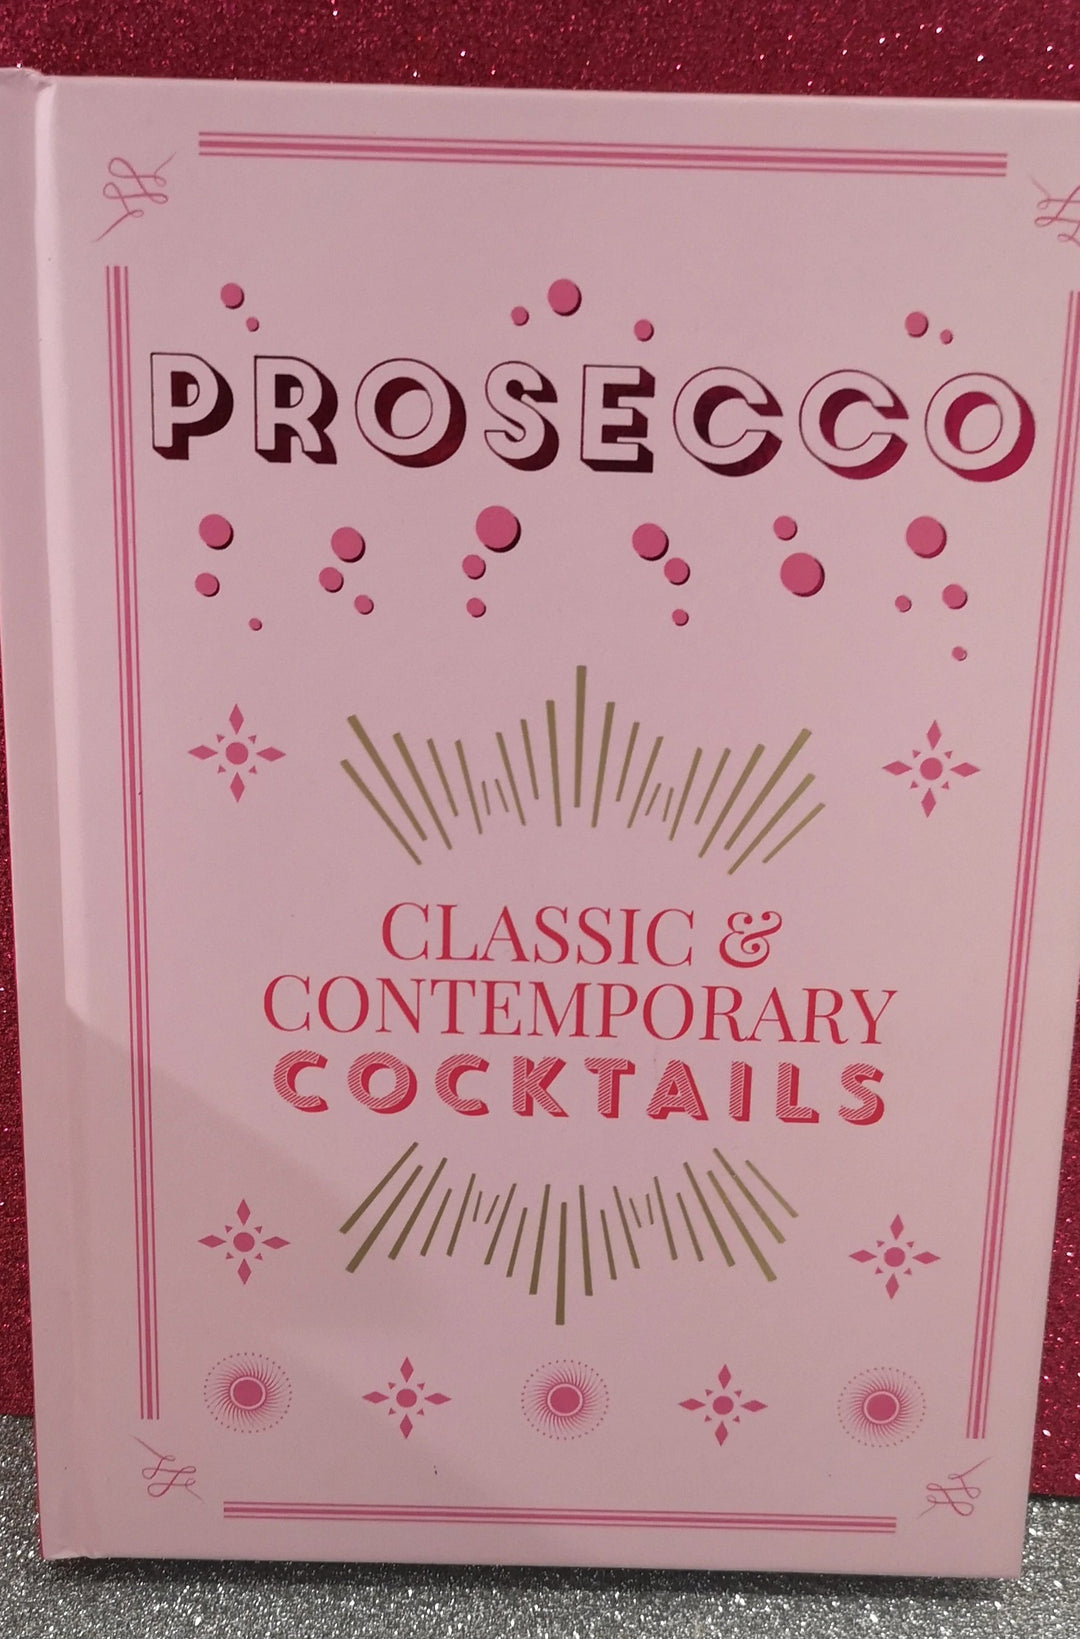 Rezeptbuch Prosecco - classic & Contemporary cocktails (englischsprachig, neu) - British Moments